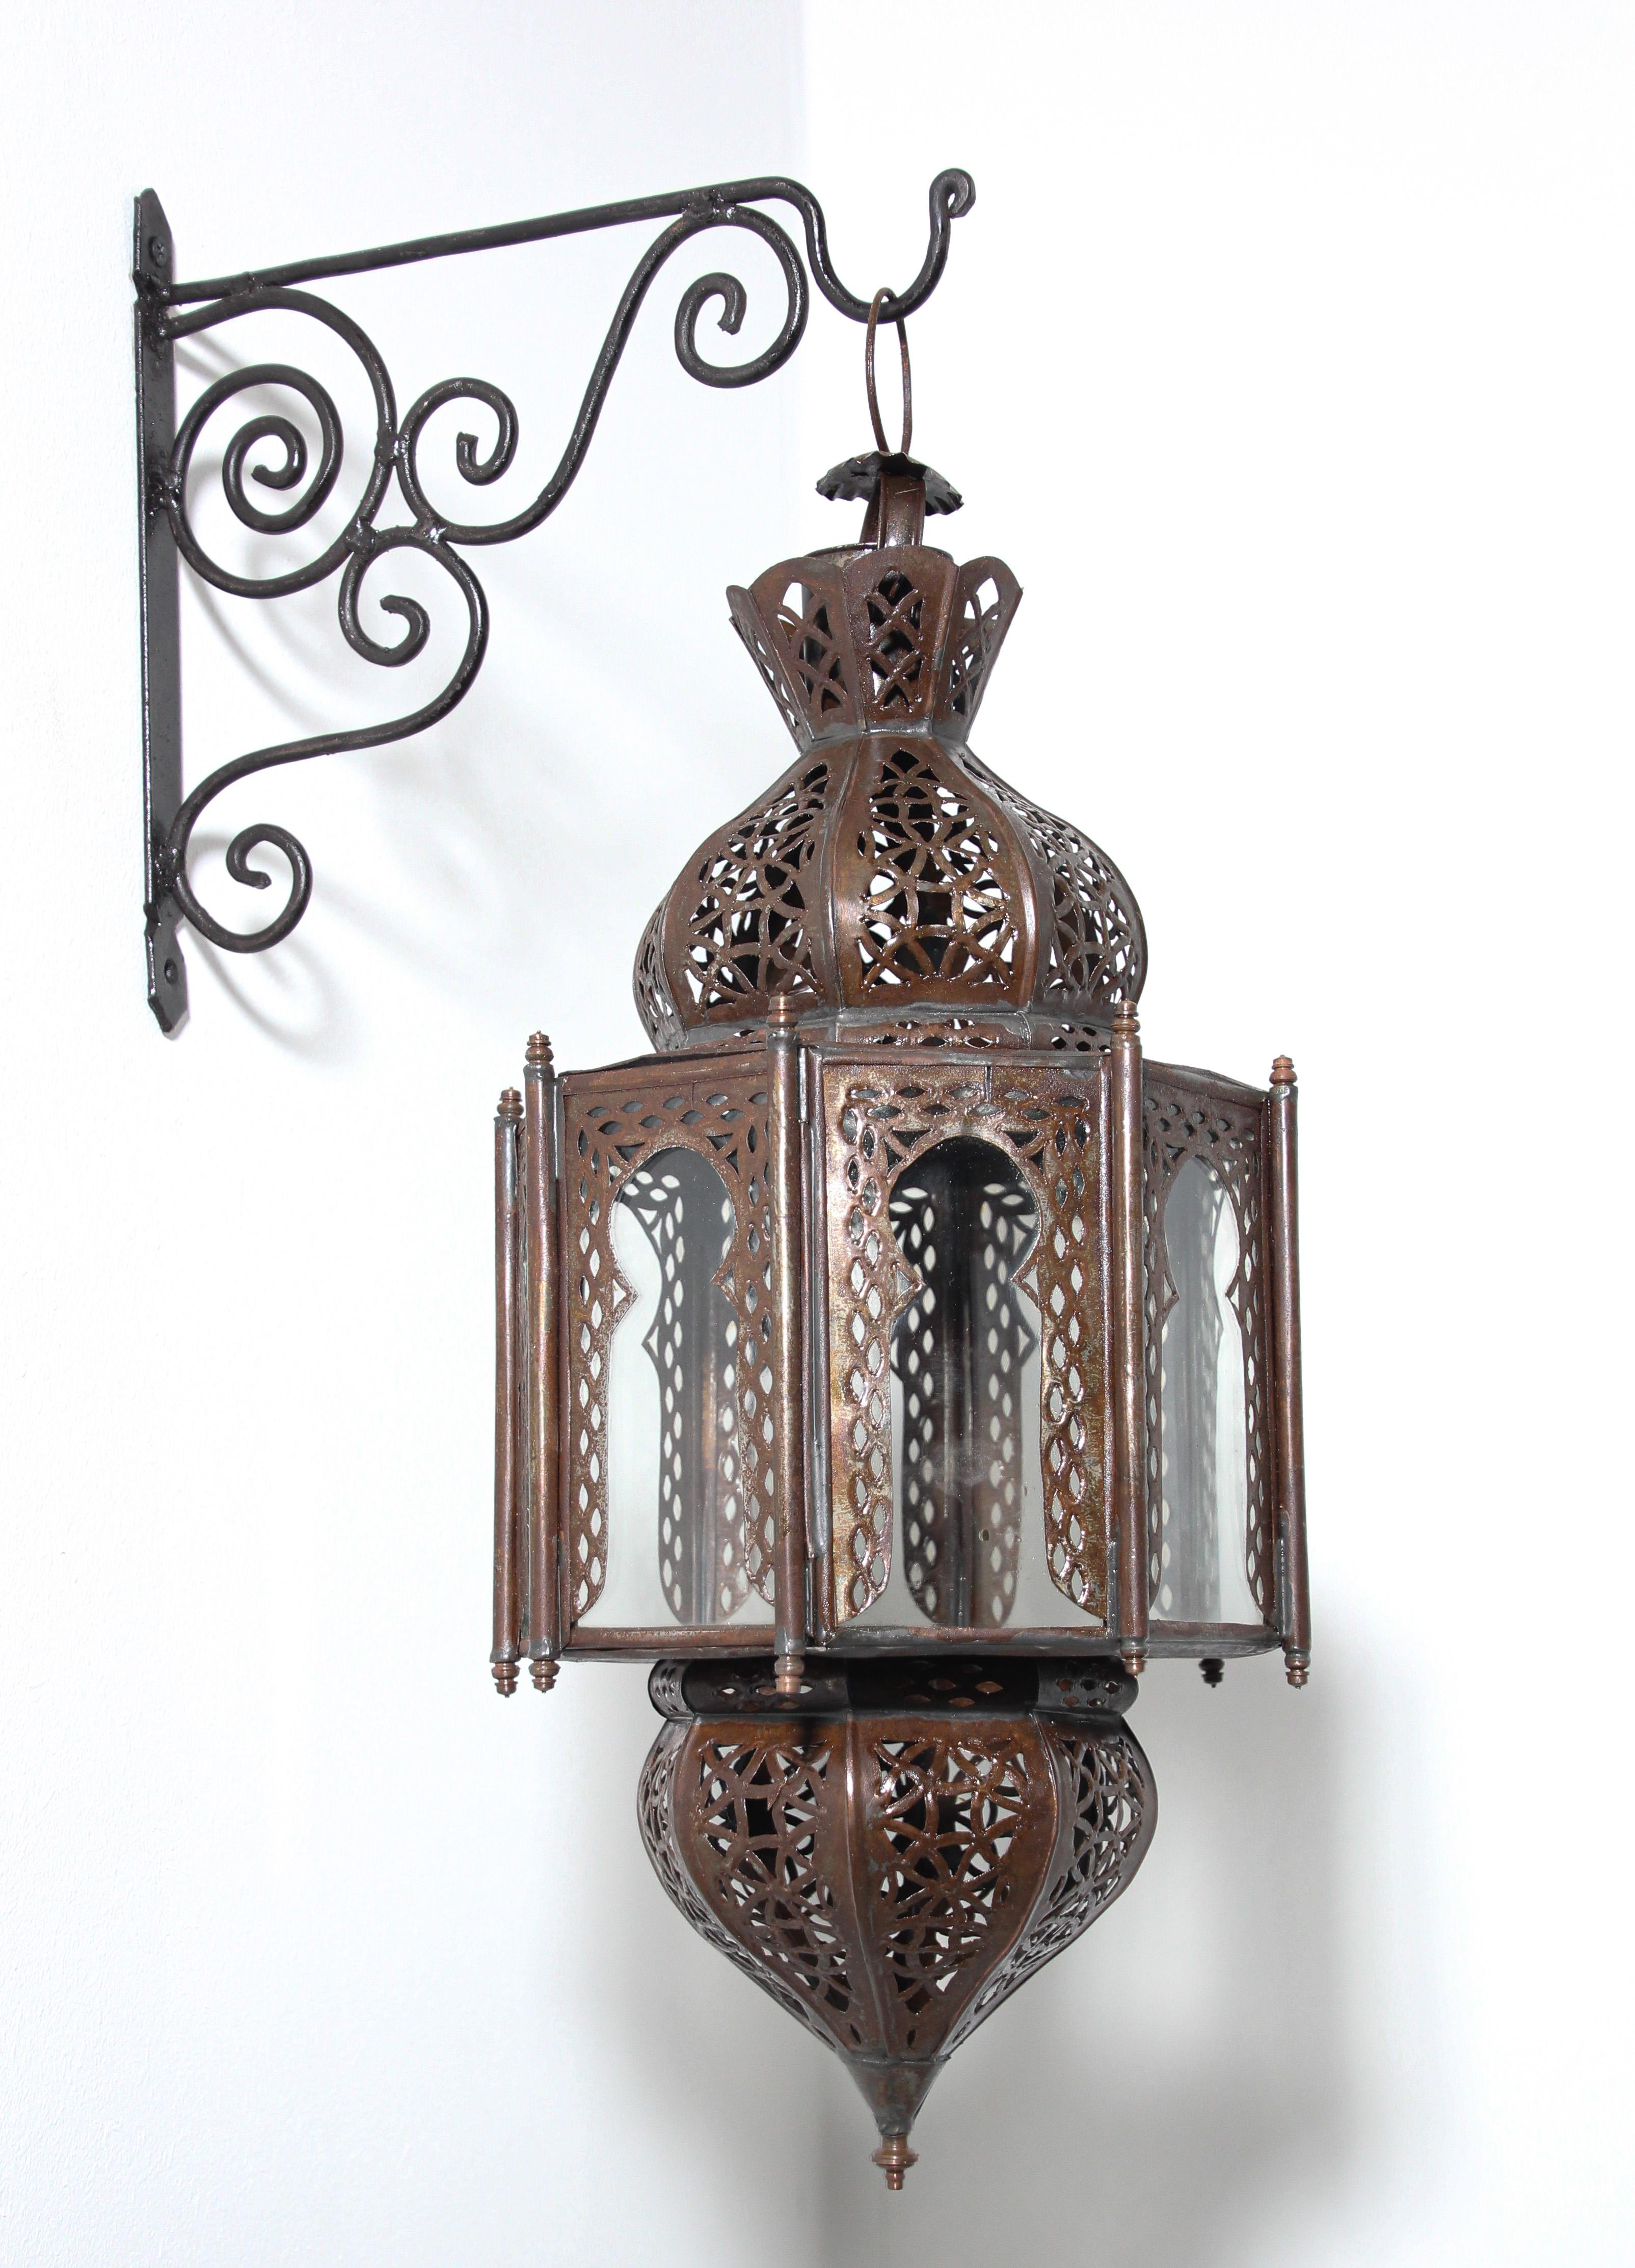 Lanterne marocaine en métal mauresque et verre transparent.
Lanterne marocaine de forme octogonale en métal couleur rouille et verre transparent.
Le haut et le bas sont ornés d'un travail de métal ouvert avec un design mauresque.
L'éclairage